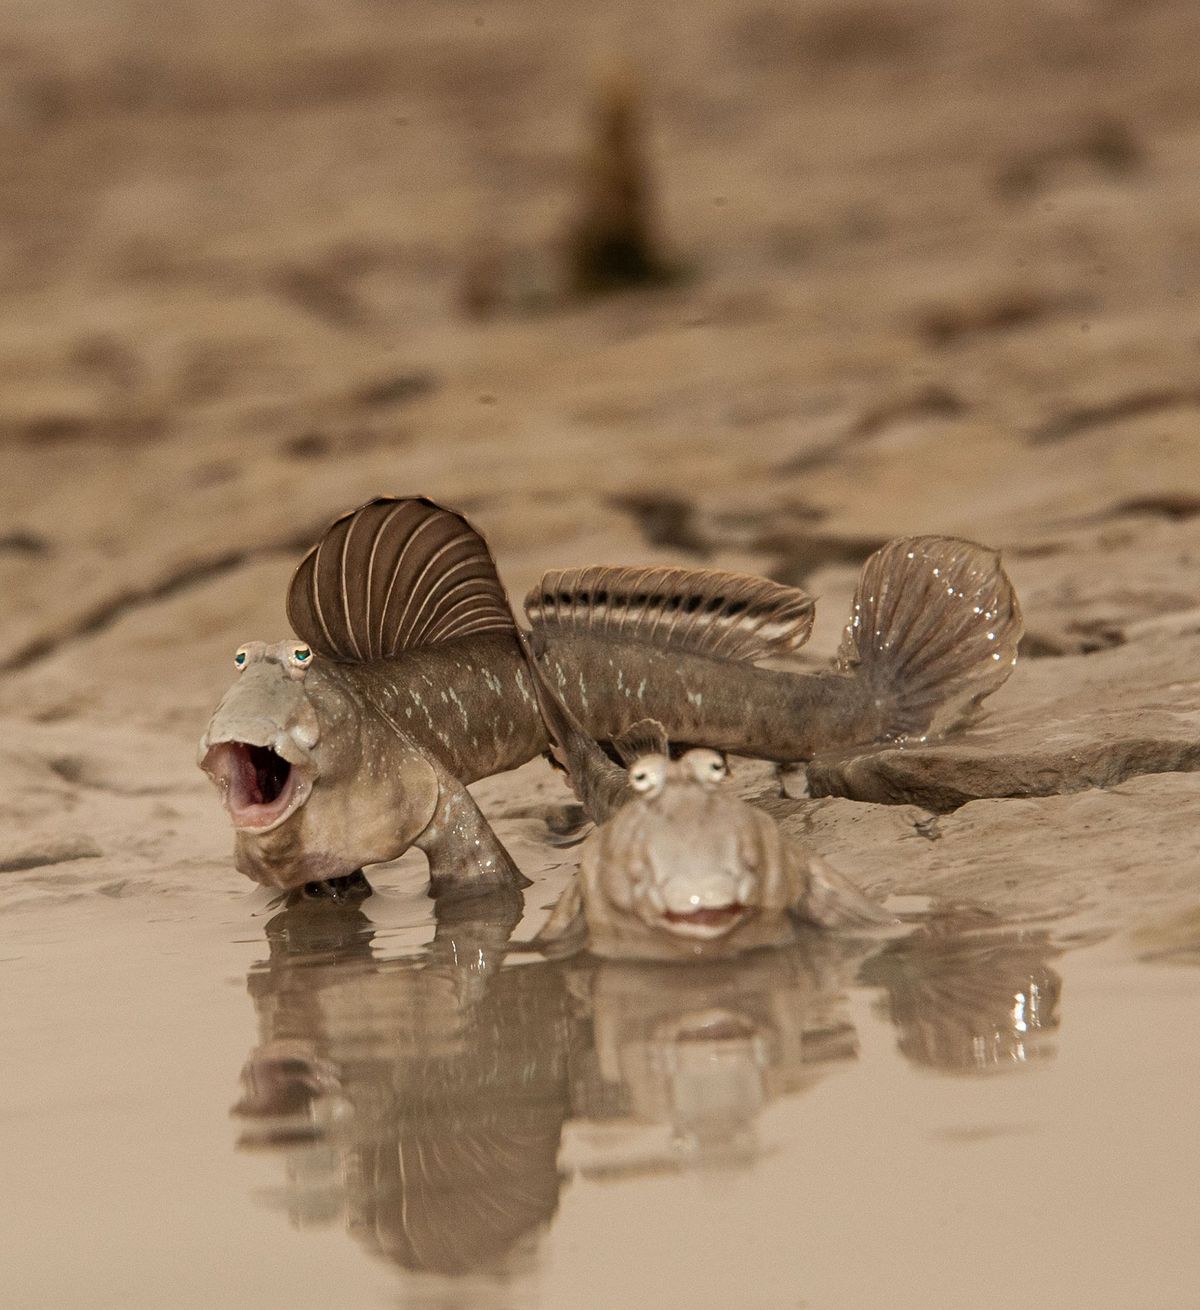 Enkele tientallen soorten slijkspringers leven in mangrove en getijdezones onder meer aan de kust van Koeweit Voor deze foto moest National Geographicfotograaf Thomas P Peschak vele uren bewegingsloos in de modder liggen om het paringsritueel van de vissen vast te leggen